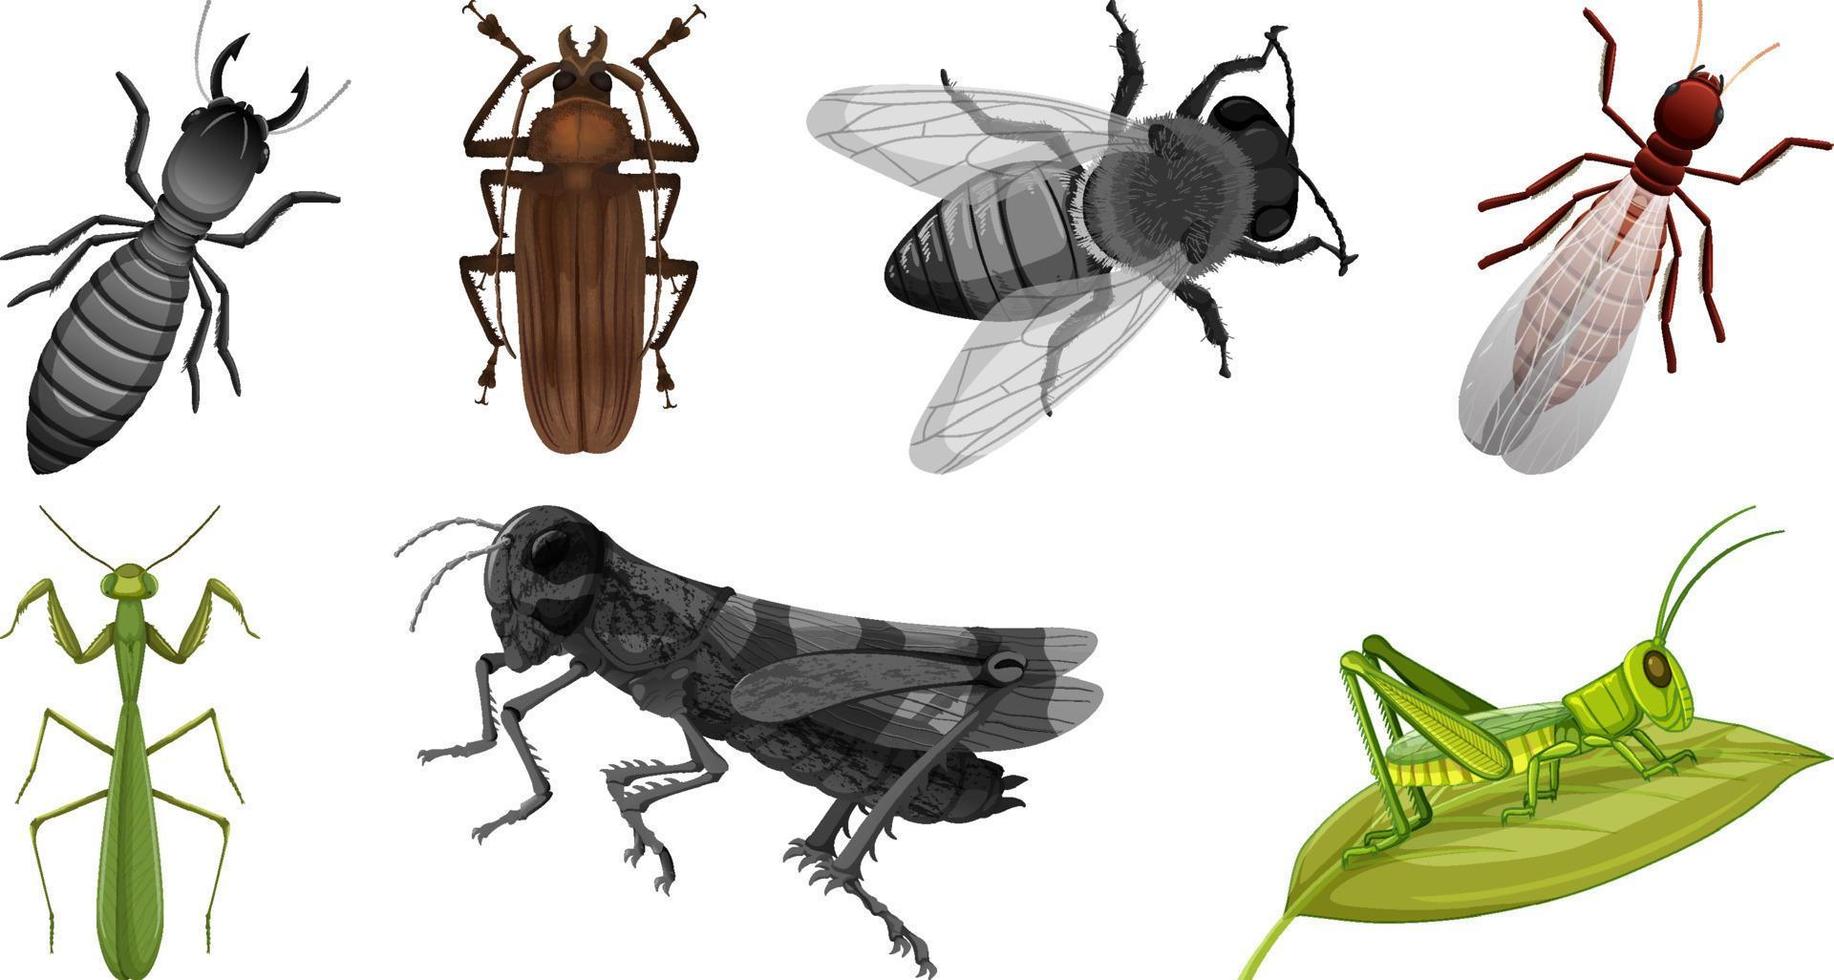 conjunto de diferentes tipos de insectos vector